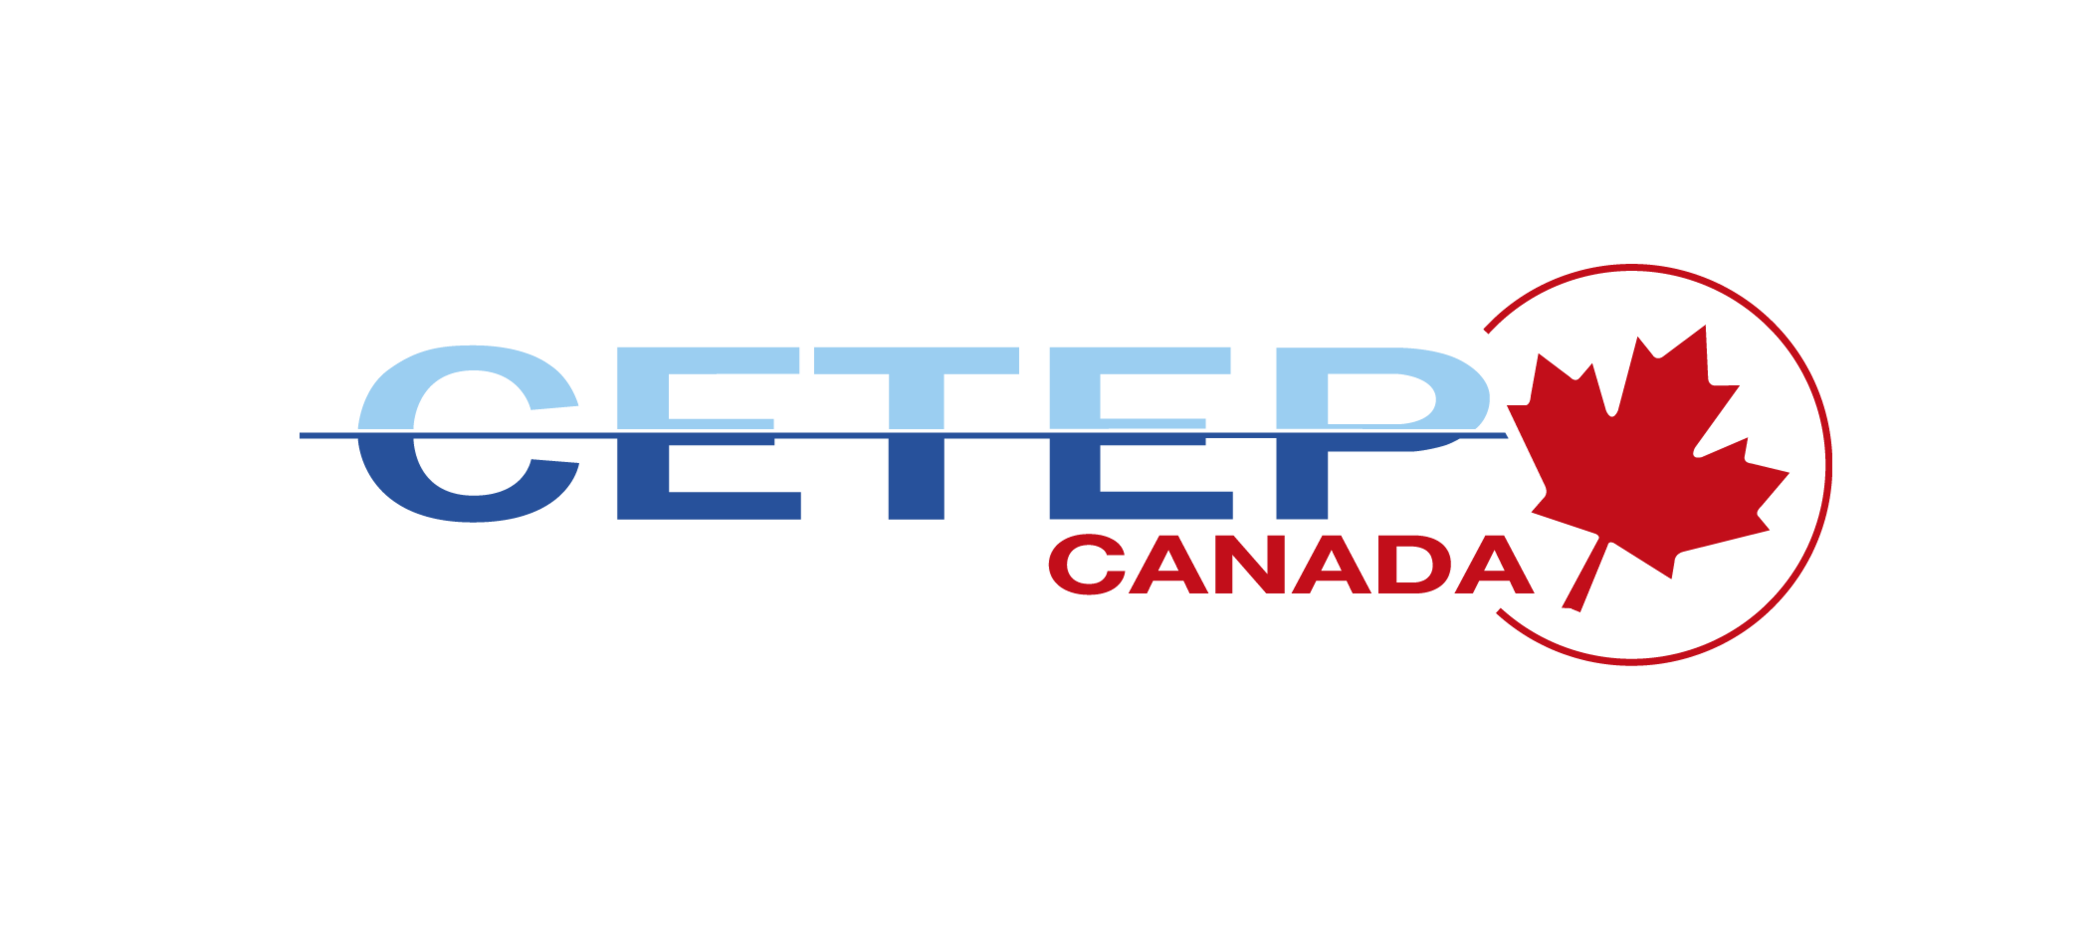 CETEP dispose d'une filiale en Amérique du nord et plus précisément au Canada.